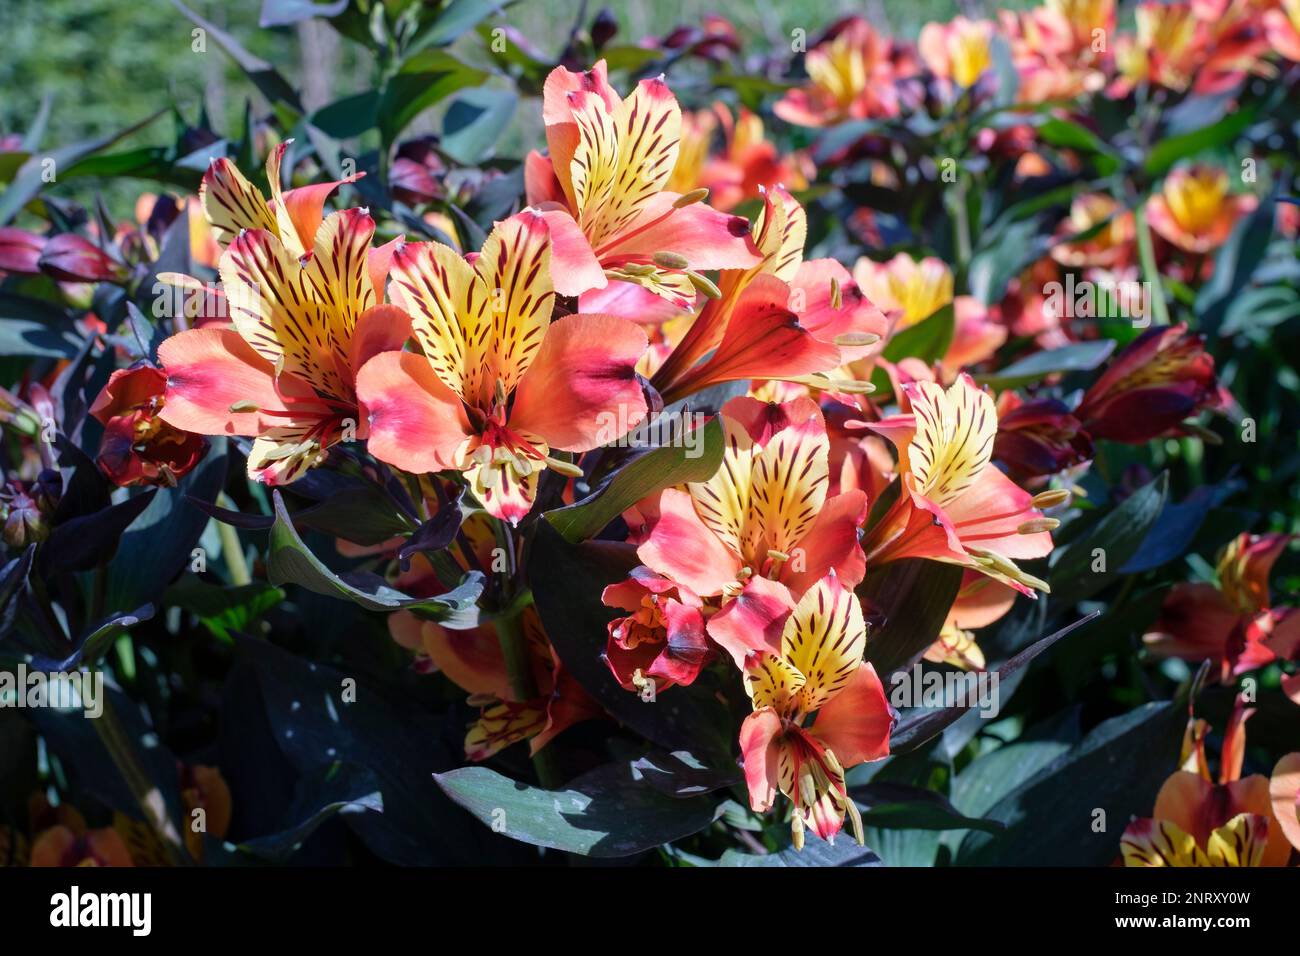 Giglio peruviano estate indiana, Alstroemeria Tesronto, perenne, fiori a forma di imbuto, rame-arancio brillante, petali interni gialli, viola-marrone macchiati Foto Stock